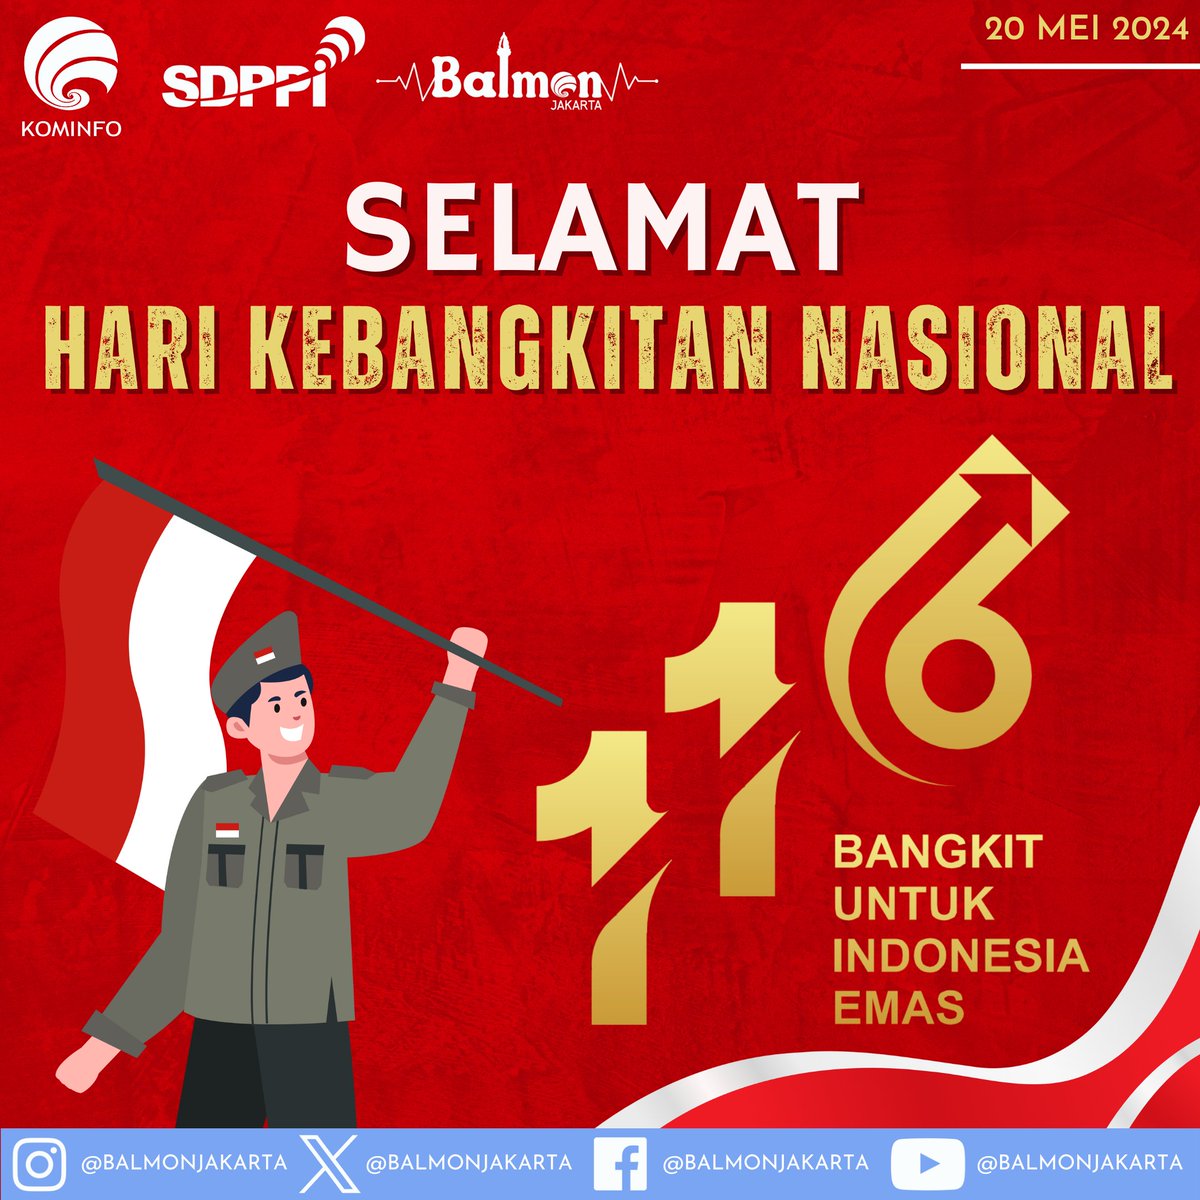 Selamat Hari Kebangkitan Nasional Ke - 116 🇮🇩✊🏼😲 #SahabatFrekuensi

Harkitnas tahun ini diperingati dengan mengangkat tema : 'Bangkit Untuk Indonesia Emas' 😁👑🇮🇩

️(1)
#Harkitnas #Harkitnas116 #Harkitnas2024 #HariKebangkitanNasional #BangkitUntukIndonesiaEmas
#BalmonJakarta